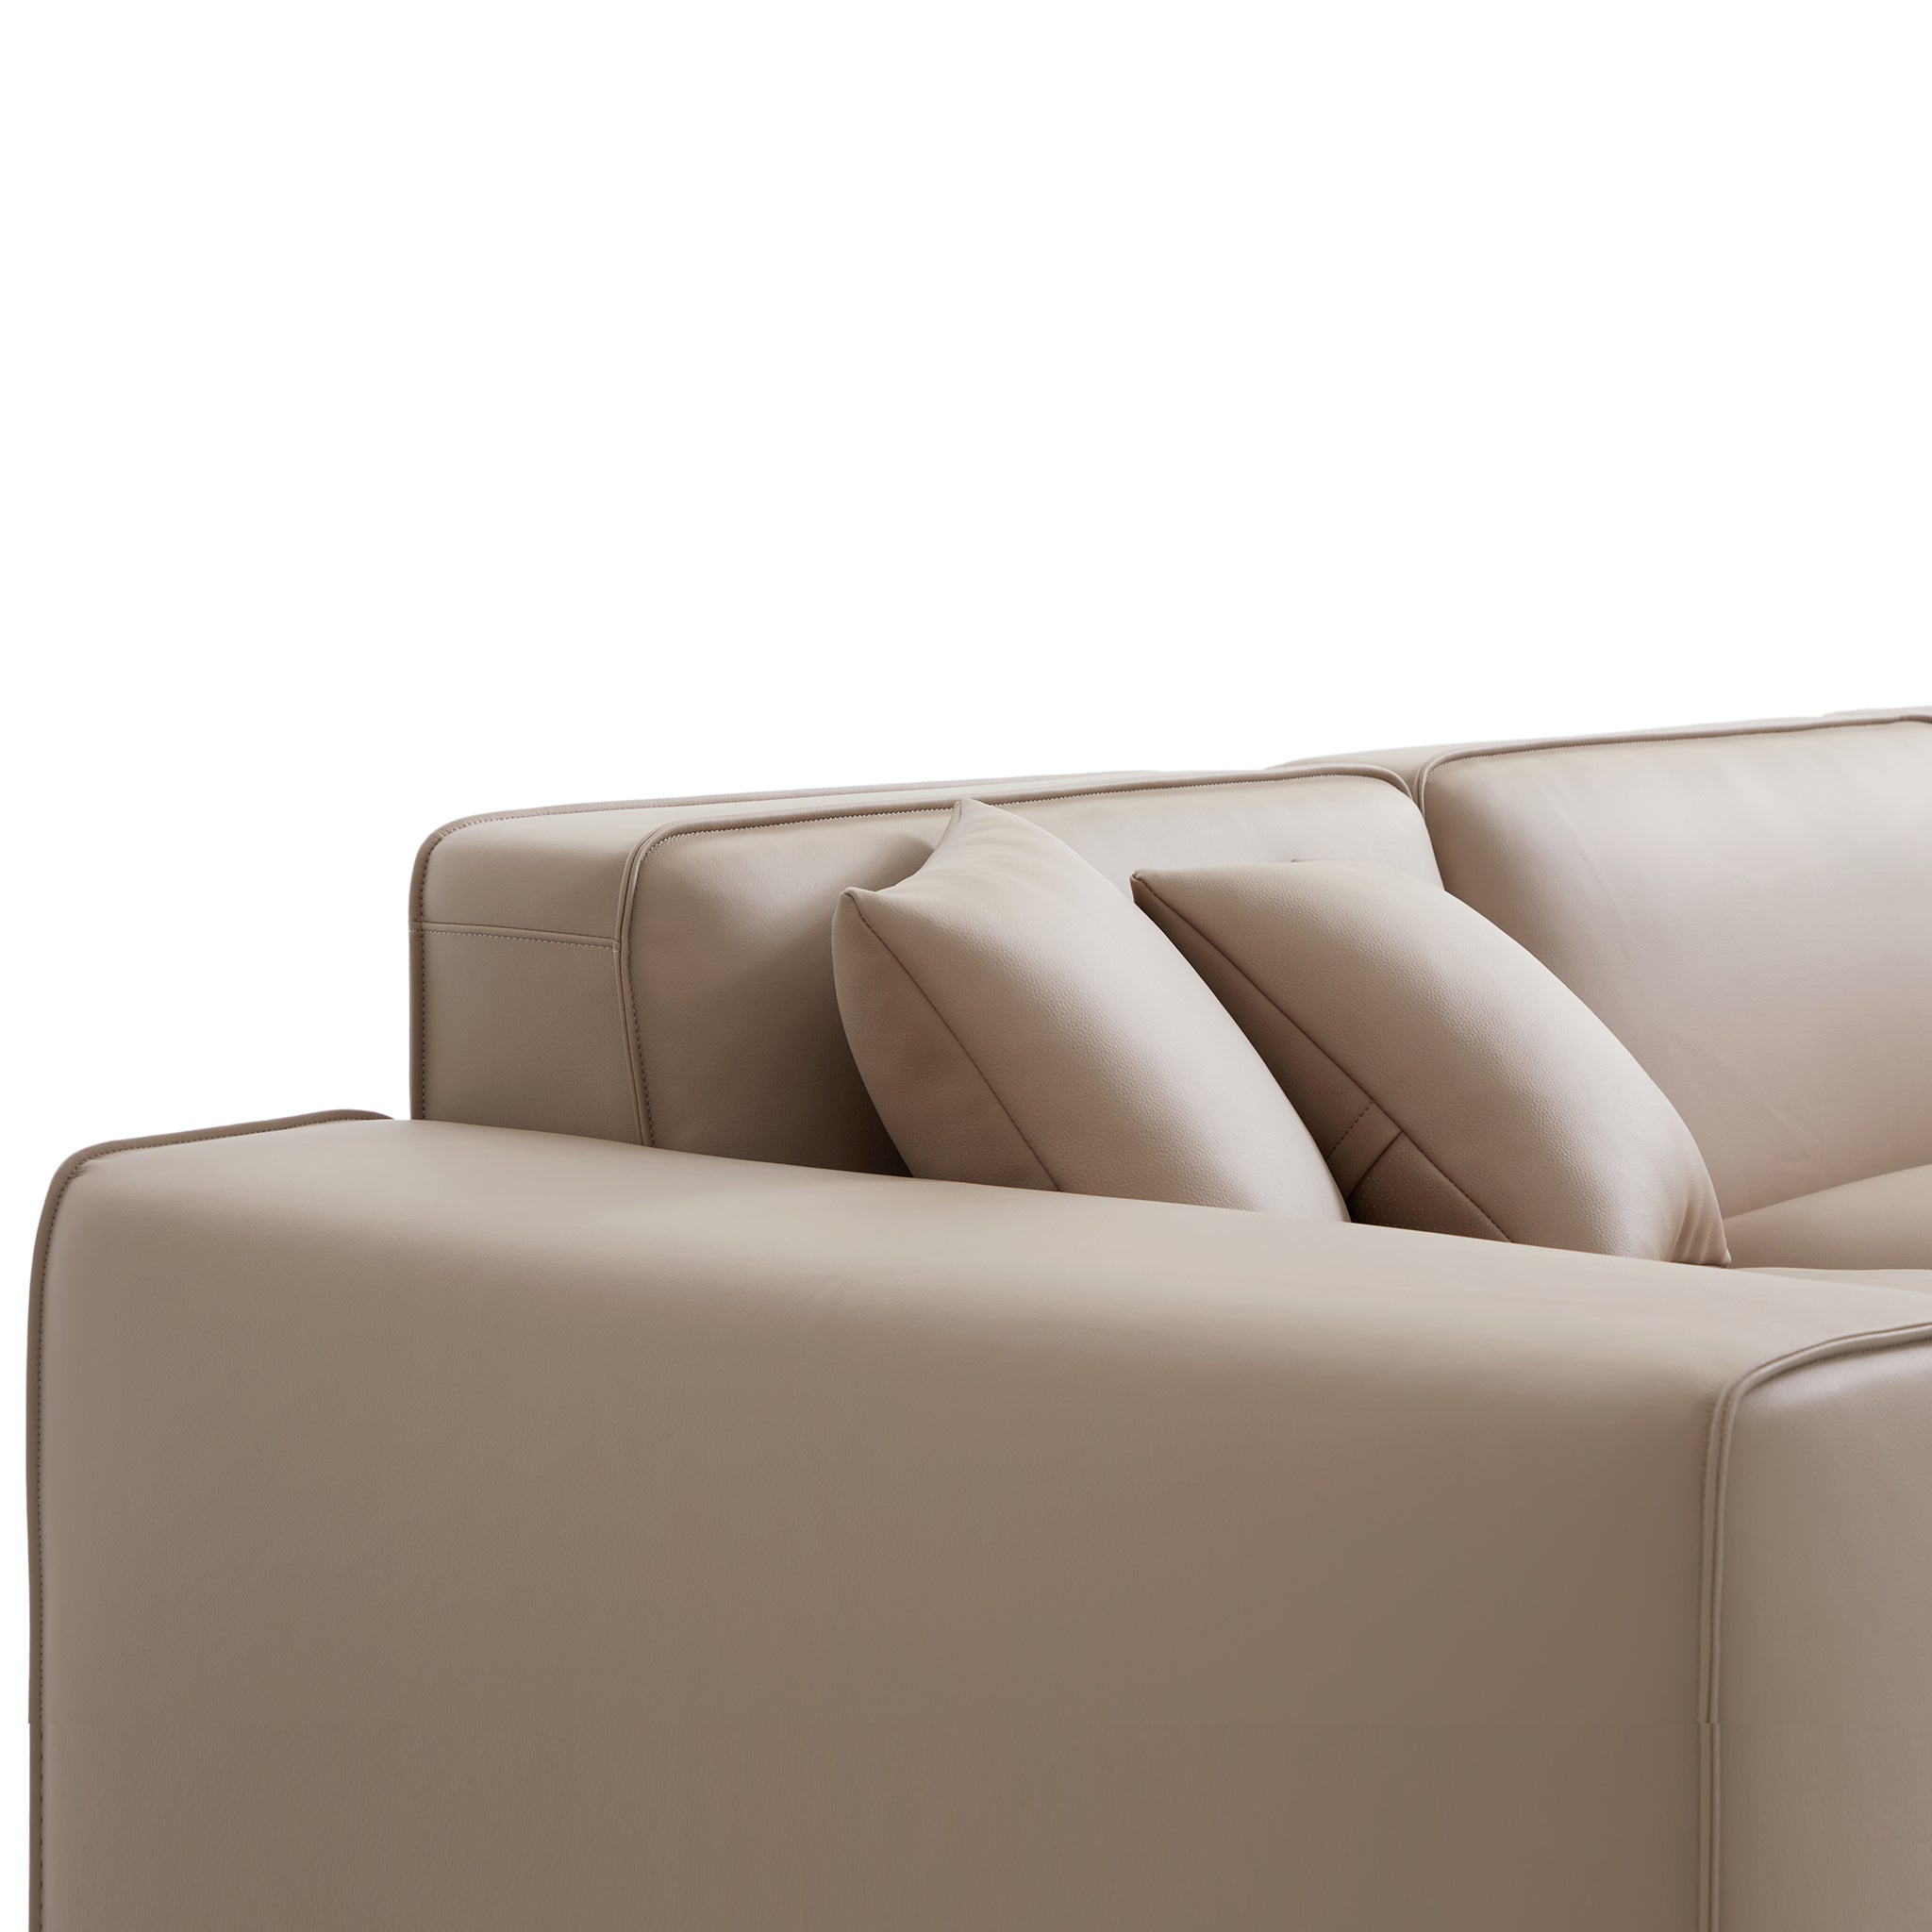 Domus Modular Khaki Leather Sofa and Ottoman